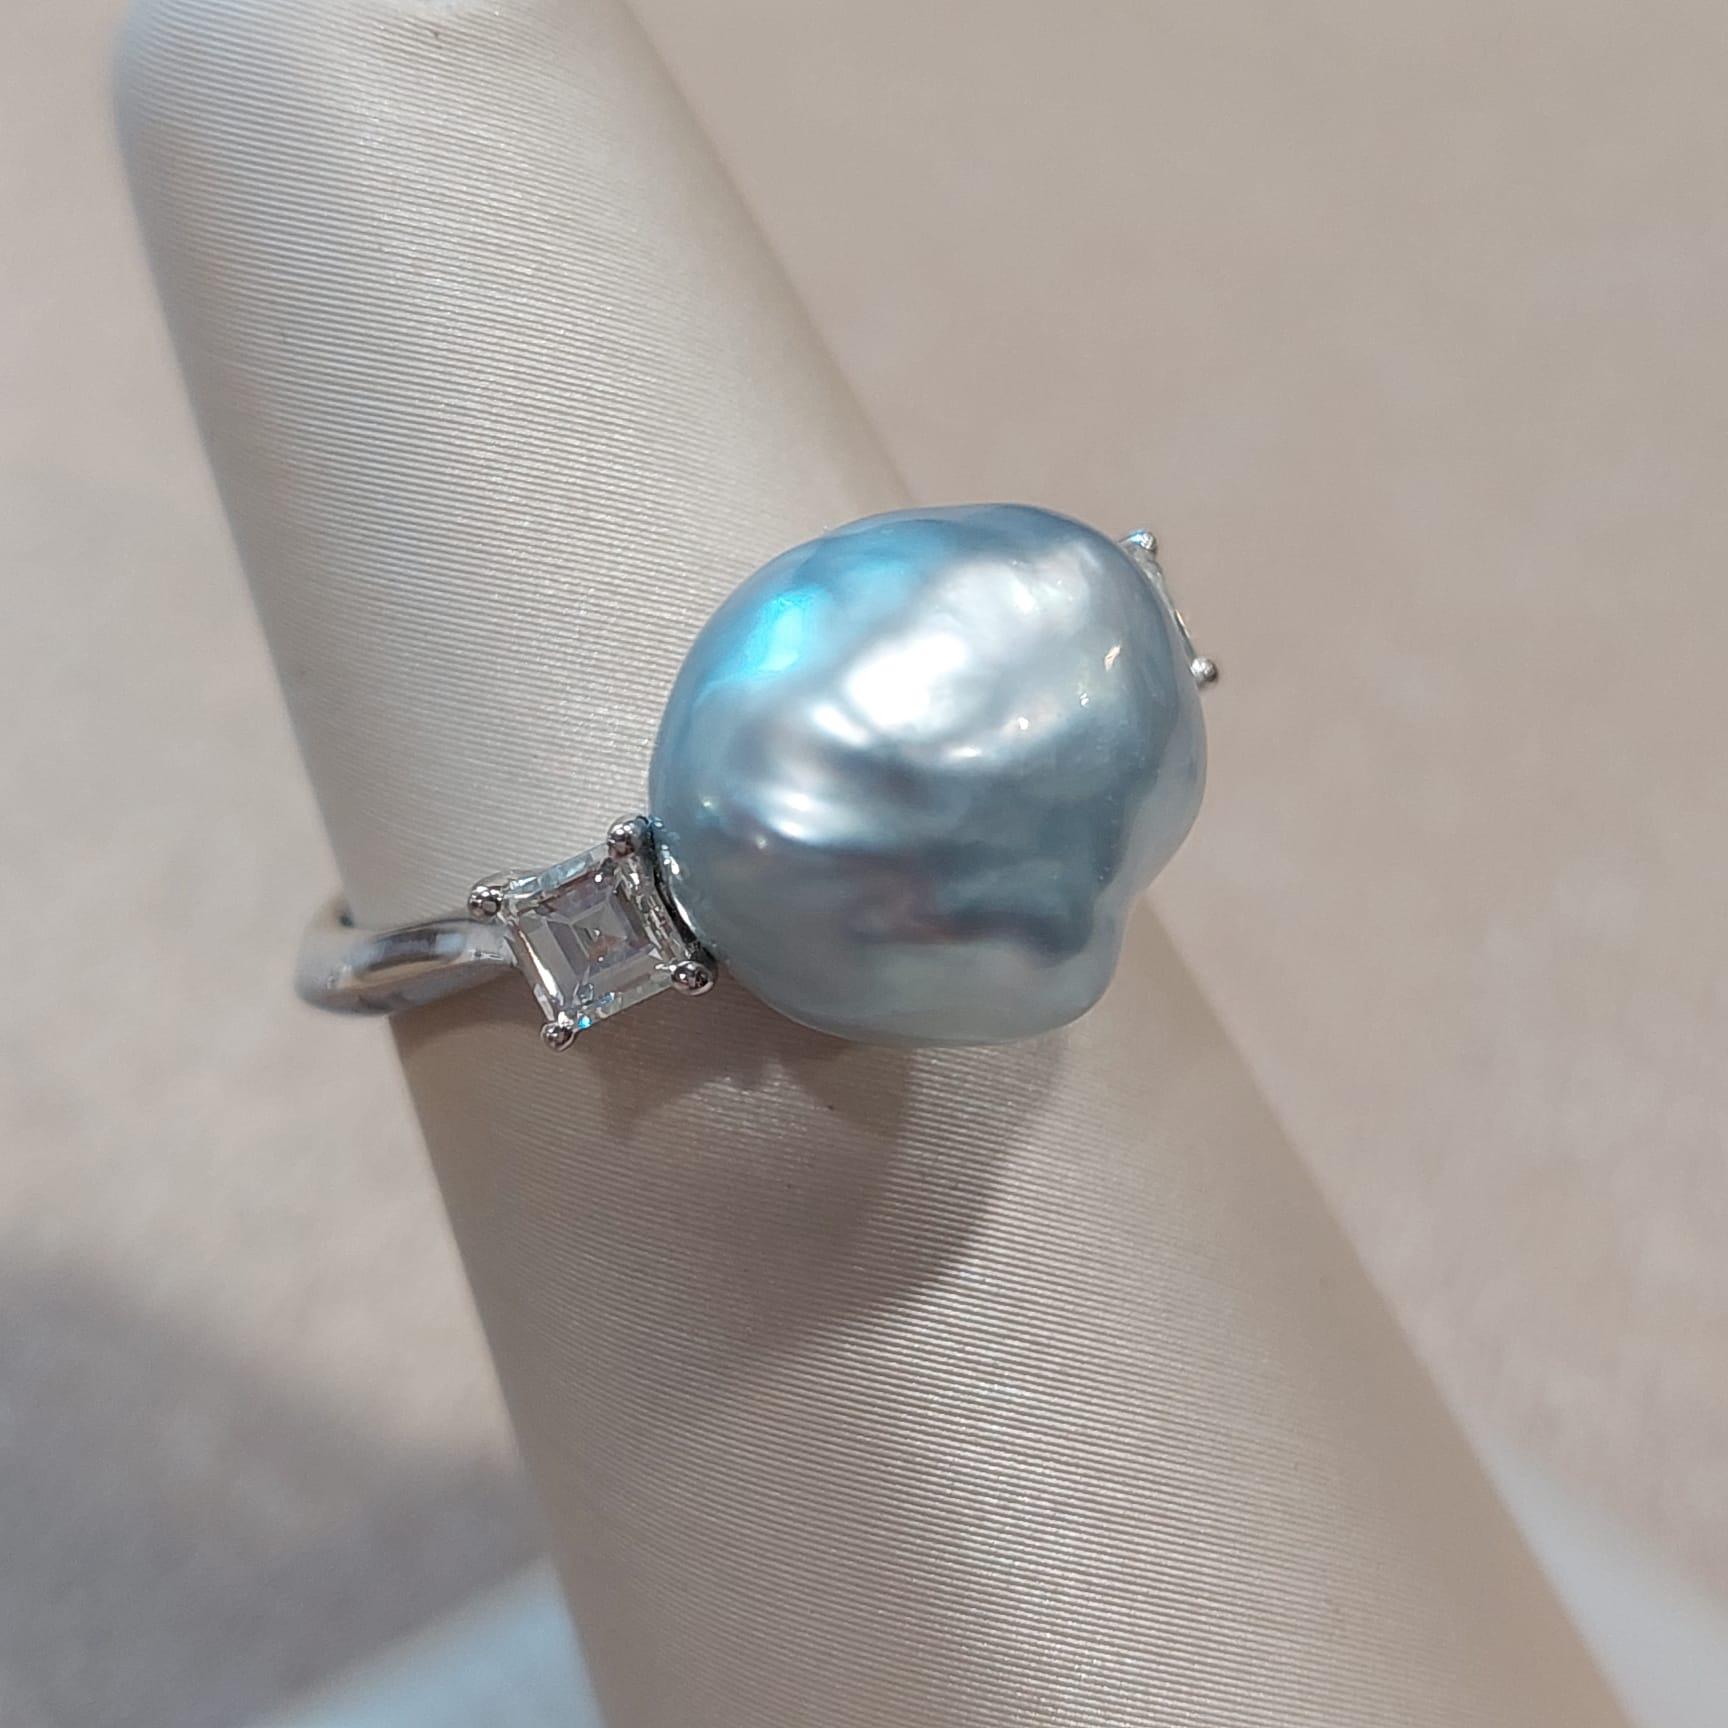 Weiße Perlen symbolisieren Unschuld, Schönheit, Aufrichtigkeit und Neubeginn. Das macht die weiße Perle zu einem echten Klassiker für Brautschmuck.

Das Zentrum als silberne Keshi-Perle aus Japan, und die Seite Diamant als 2 Stück 0,37 Karat, in 18K